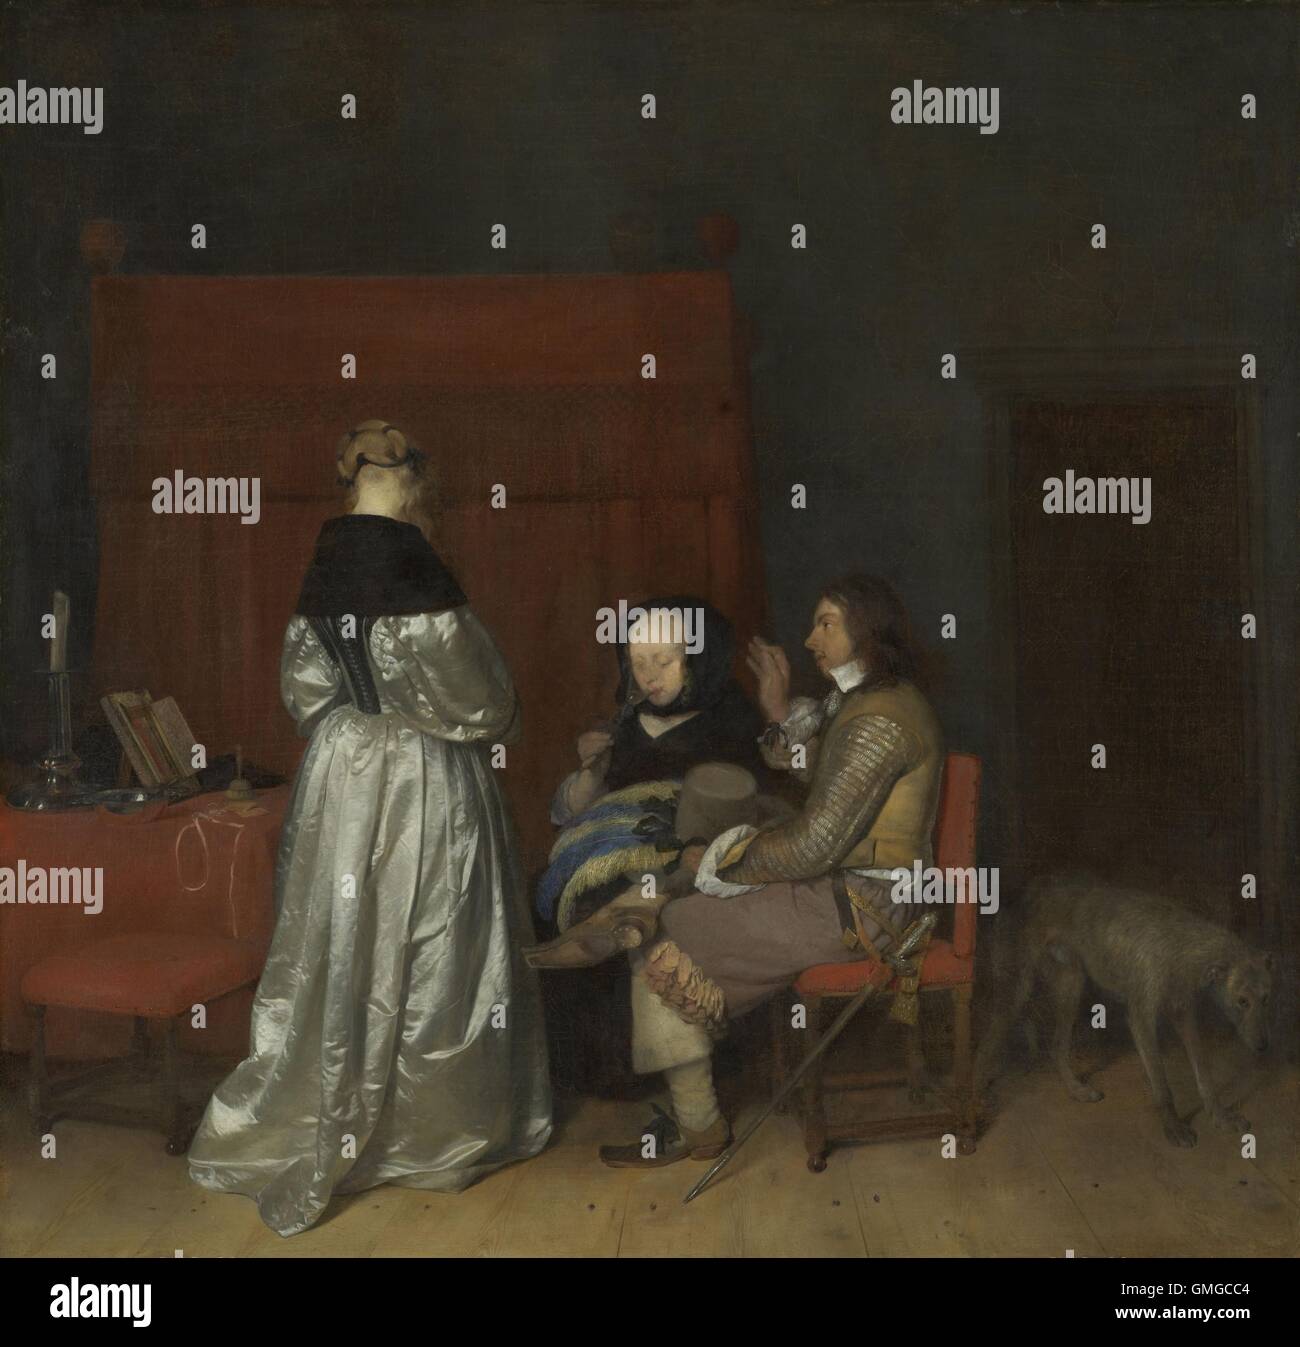 Gallant Gespräch, von Gerard ter Borch (II), 1654, niederländische Malerei, Öl auf Leinwand. Auch genannt "Die väterliche Ermahnung". A Kleider Reich stehende Frau richtet sich von jungen Mann mit einem Schwert aus seinem Gürtel hängen. Ein weiteres Frauen sitzt in der Nähe, trinken aus einem Glas (BSLOC 2016 3 229) Stockfoto